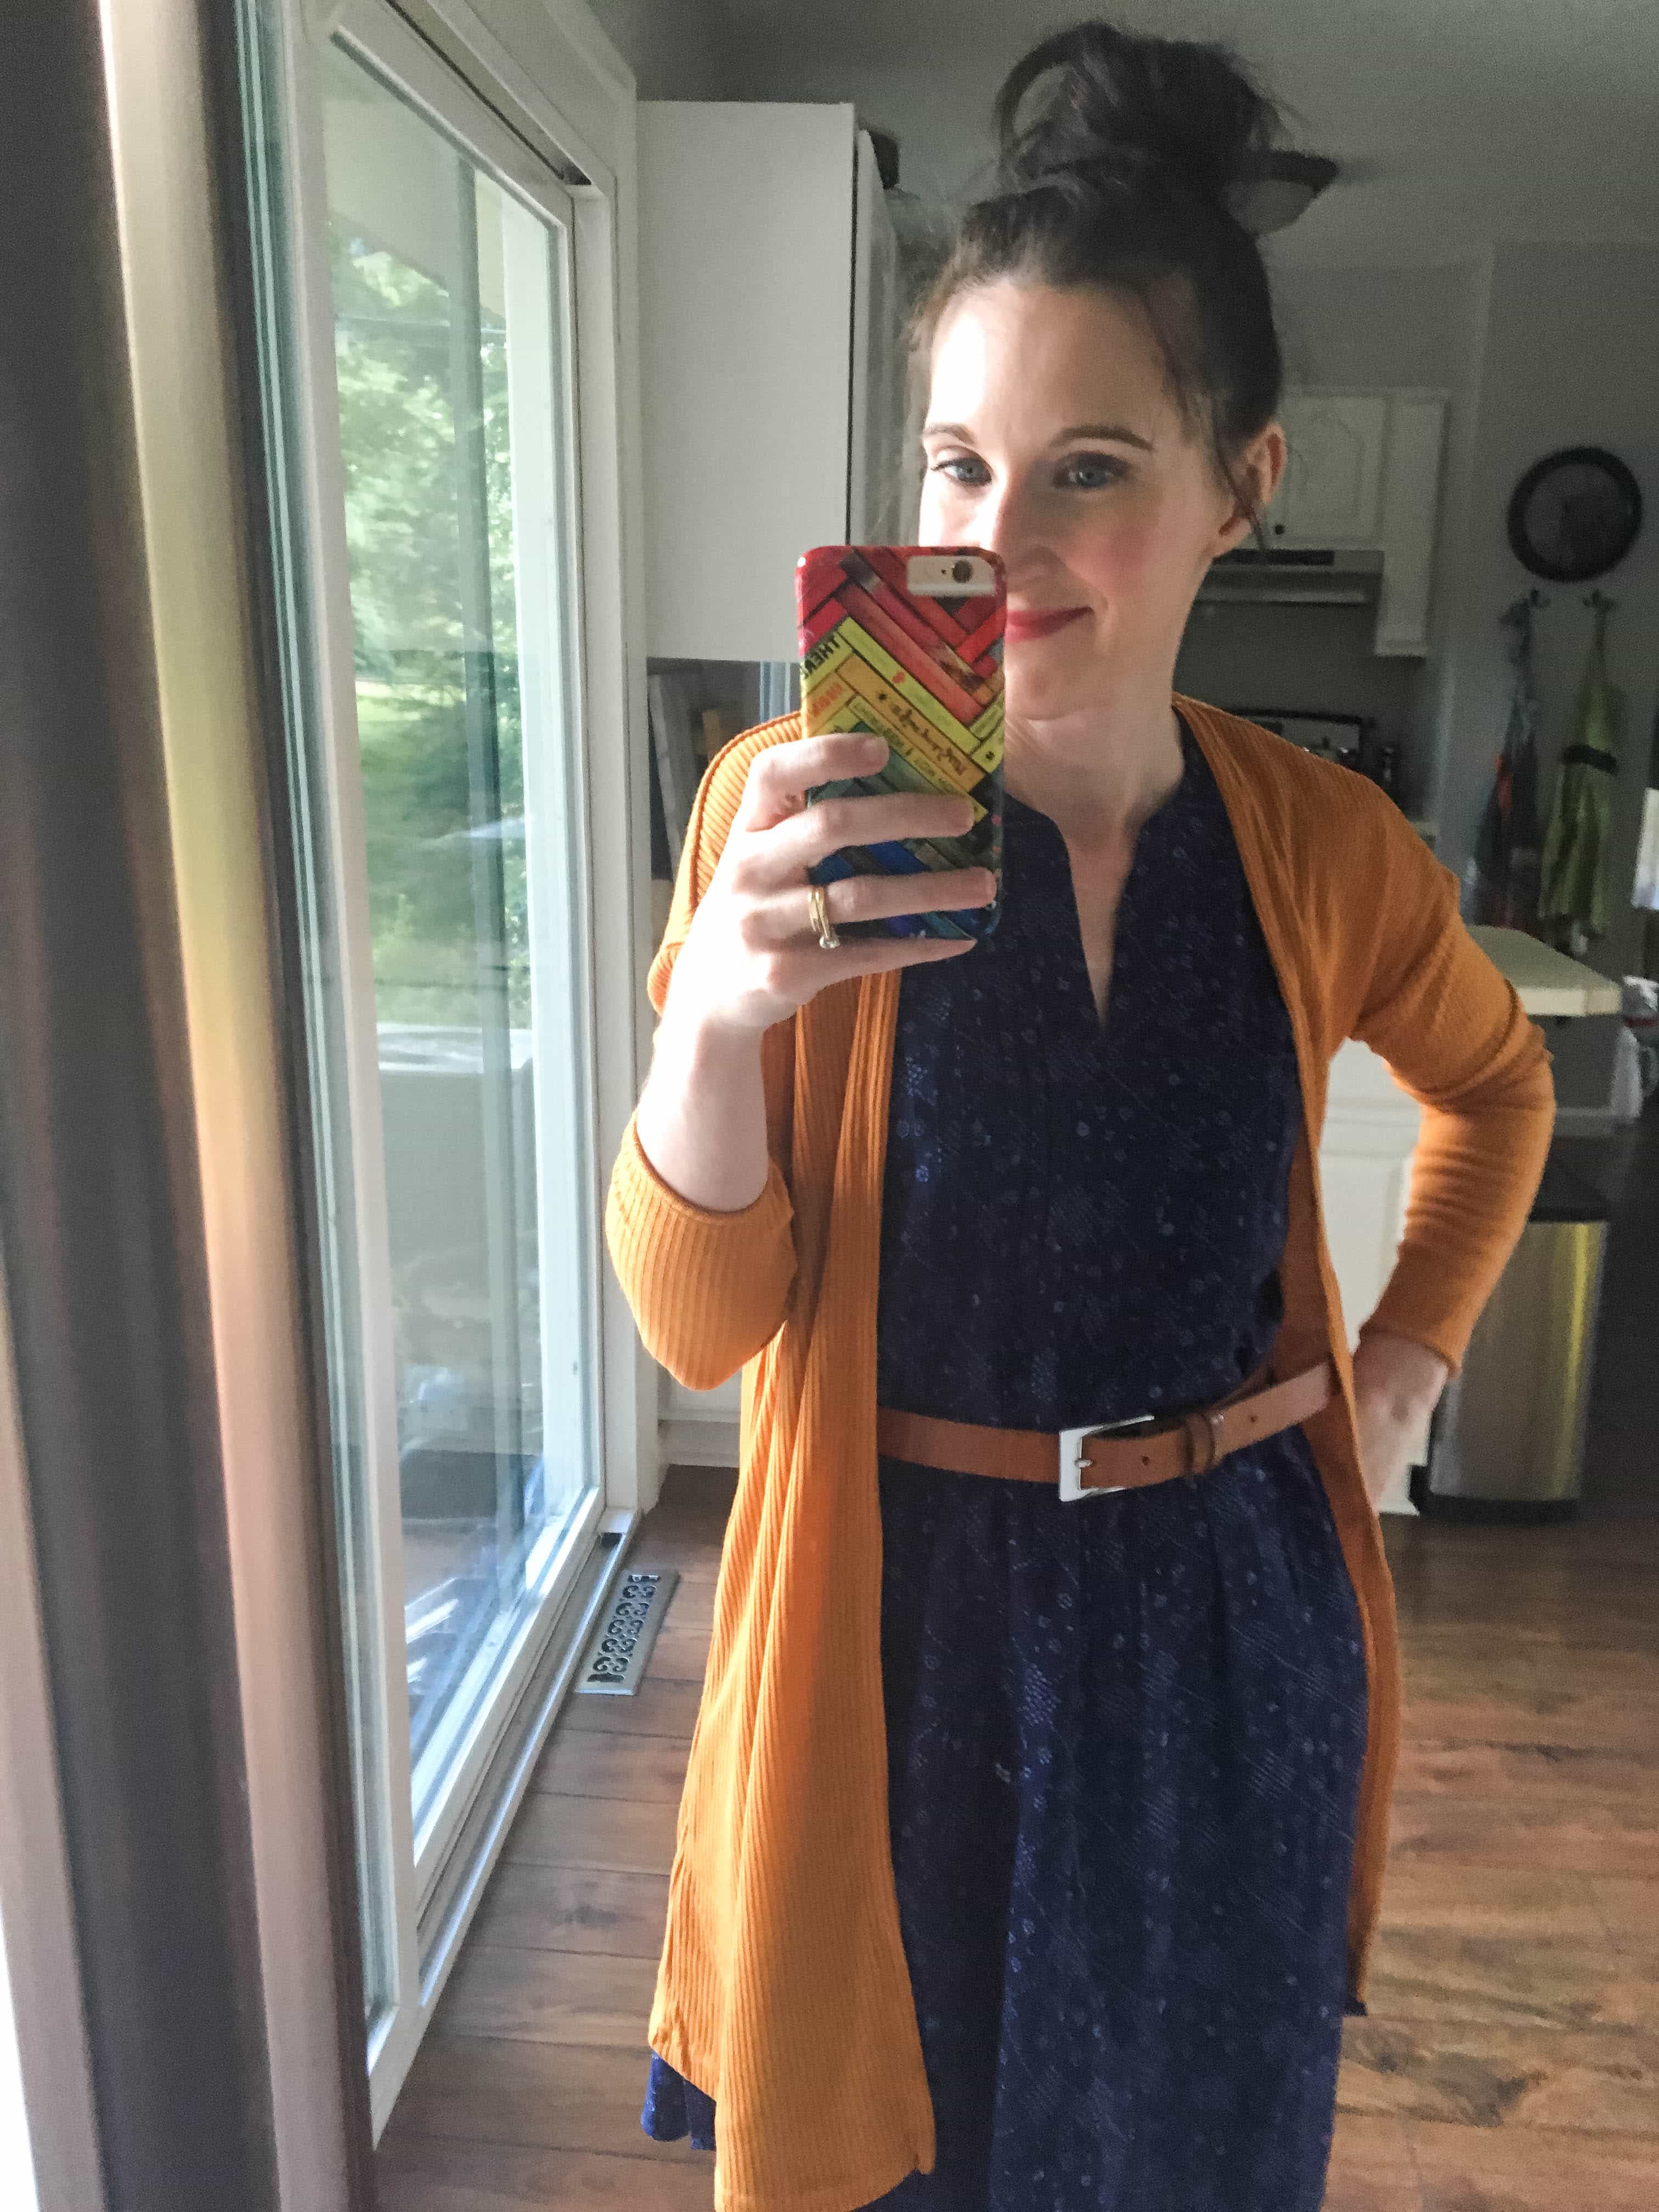 Blue Swing Dress, Mustard Sweater, & Tan Belt